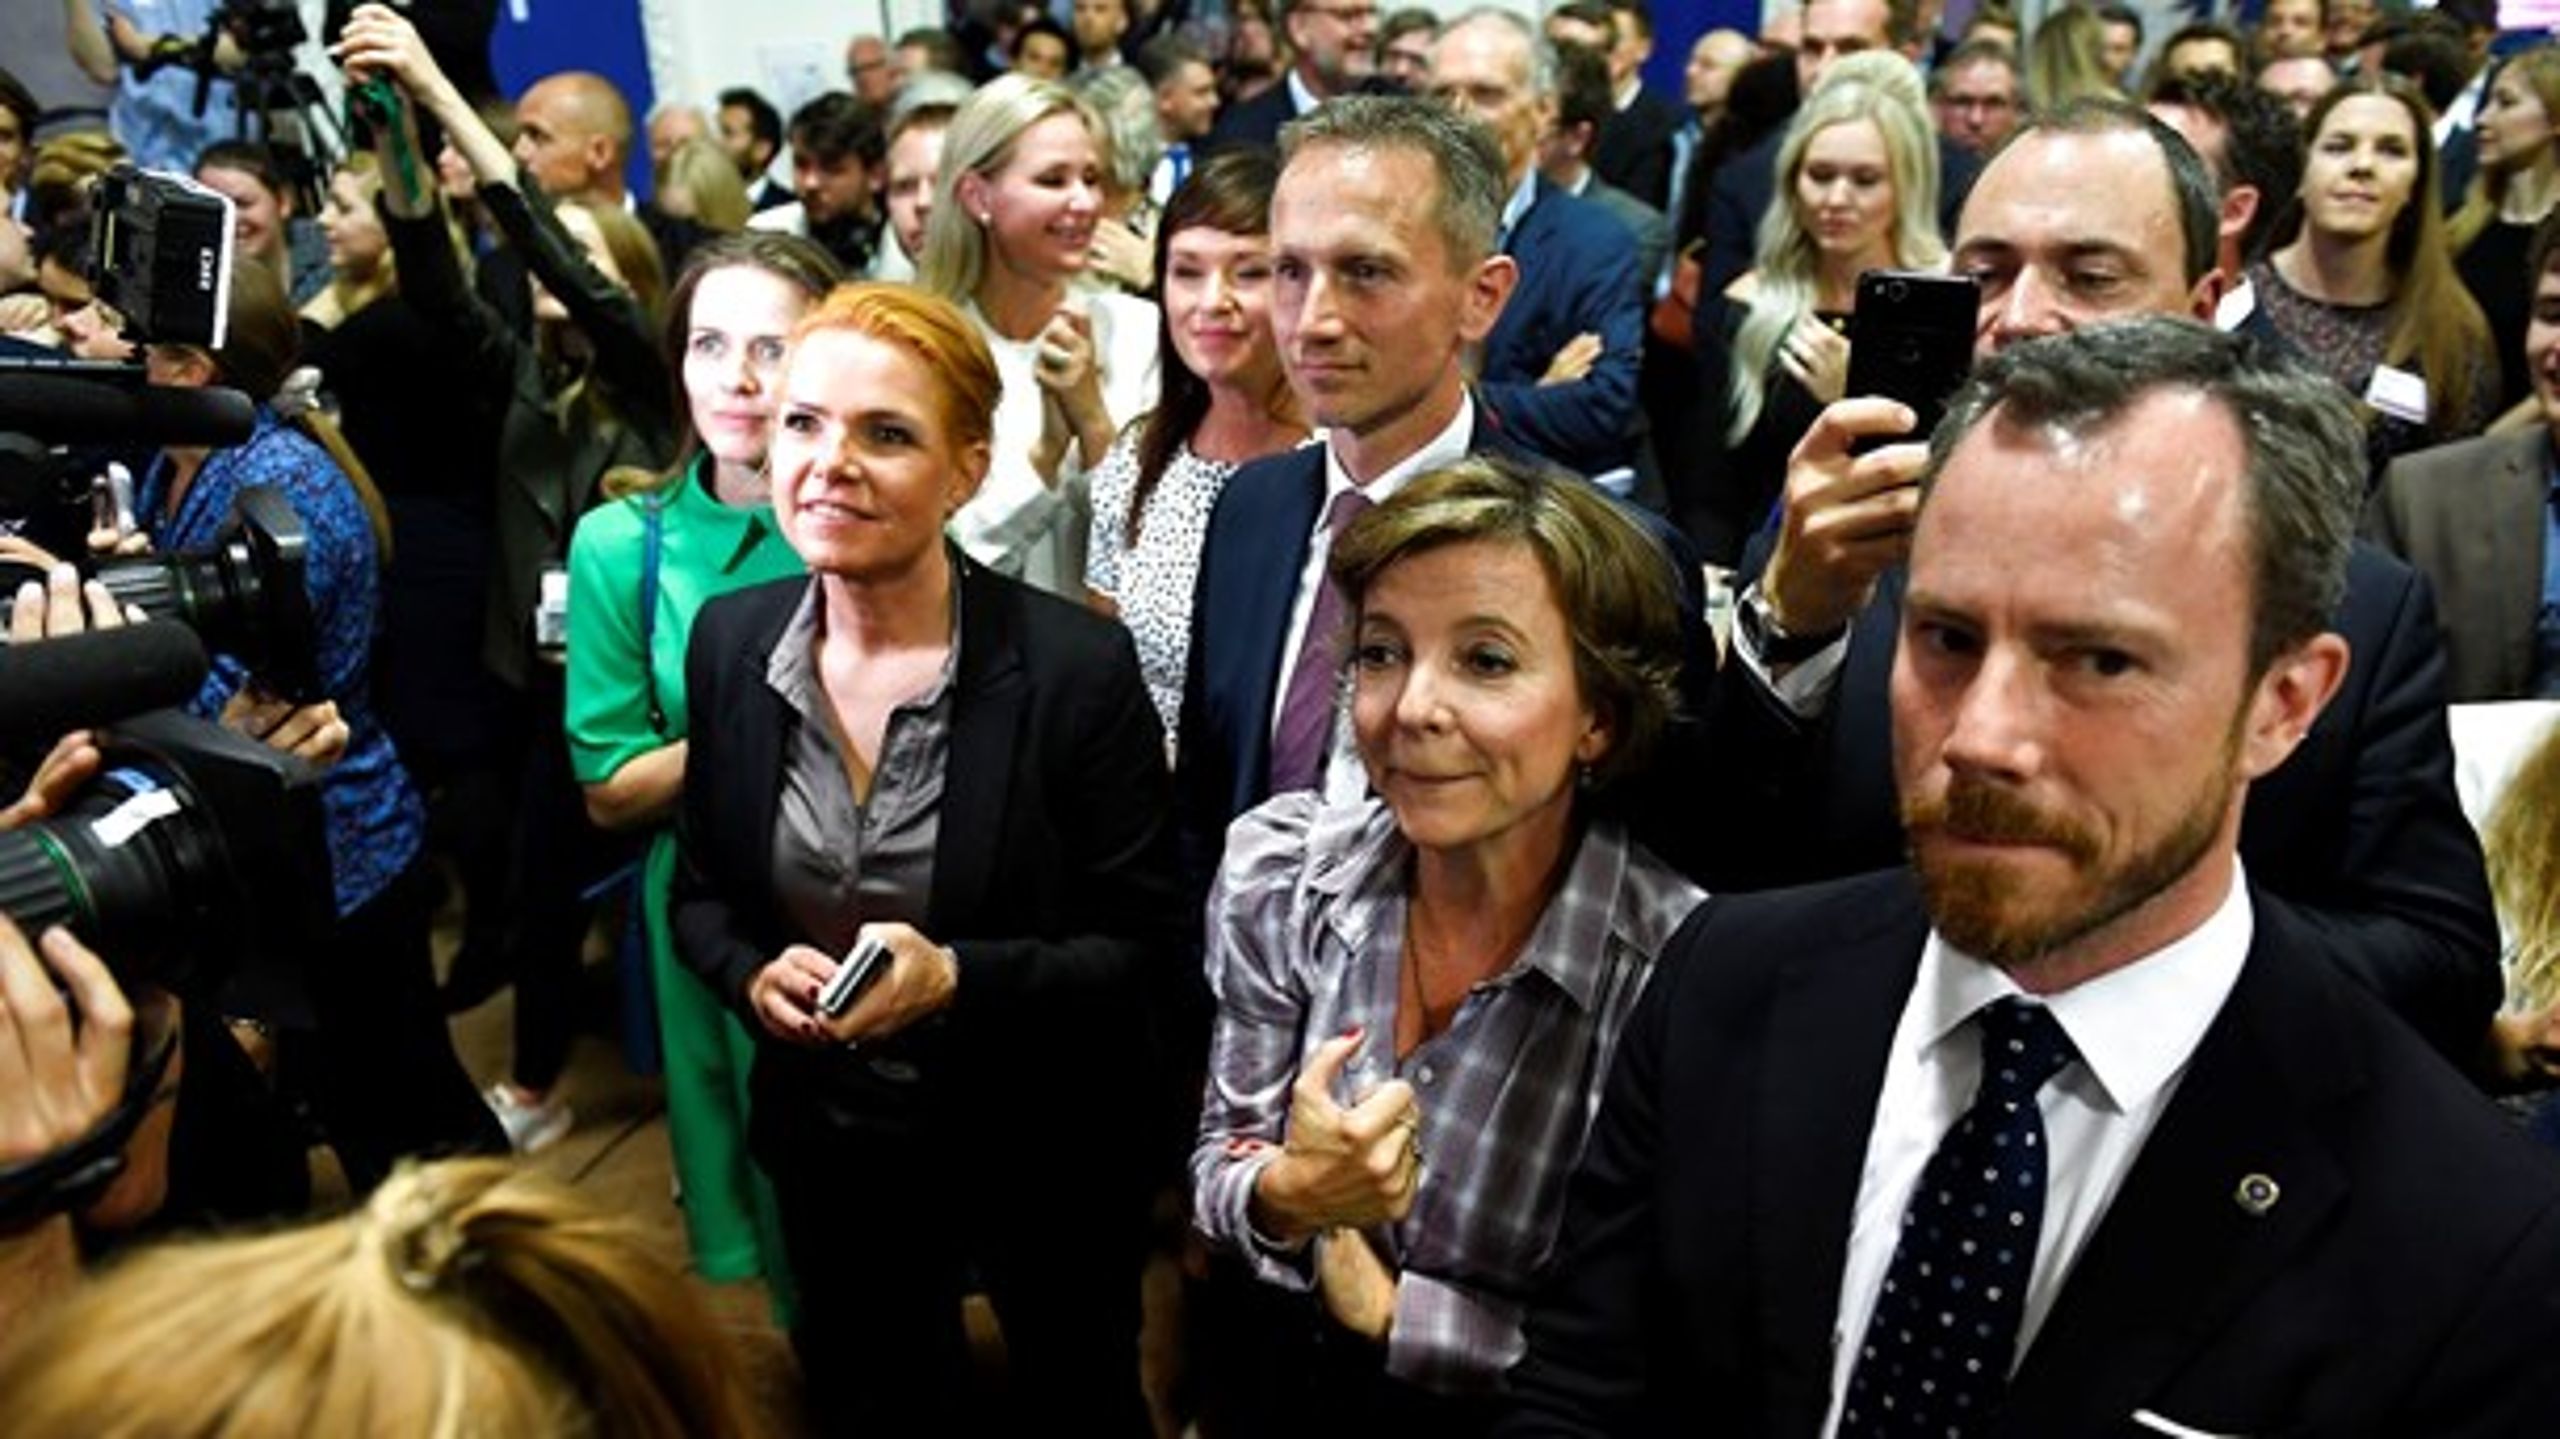 Jakob Ellemann-Jensen (th.) har lidt flere vælgere med sig end Kristian Jensen (bagest) og Inger Støjberg (tv.), som er mulige kandidater til at blive den næste leder for Venstre efter Lars Løkke.